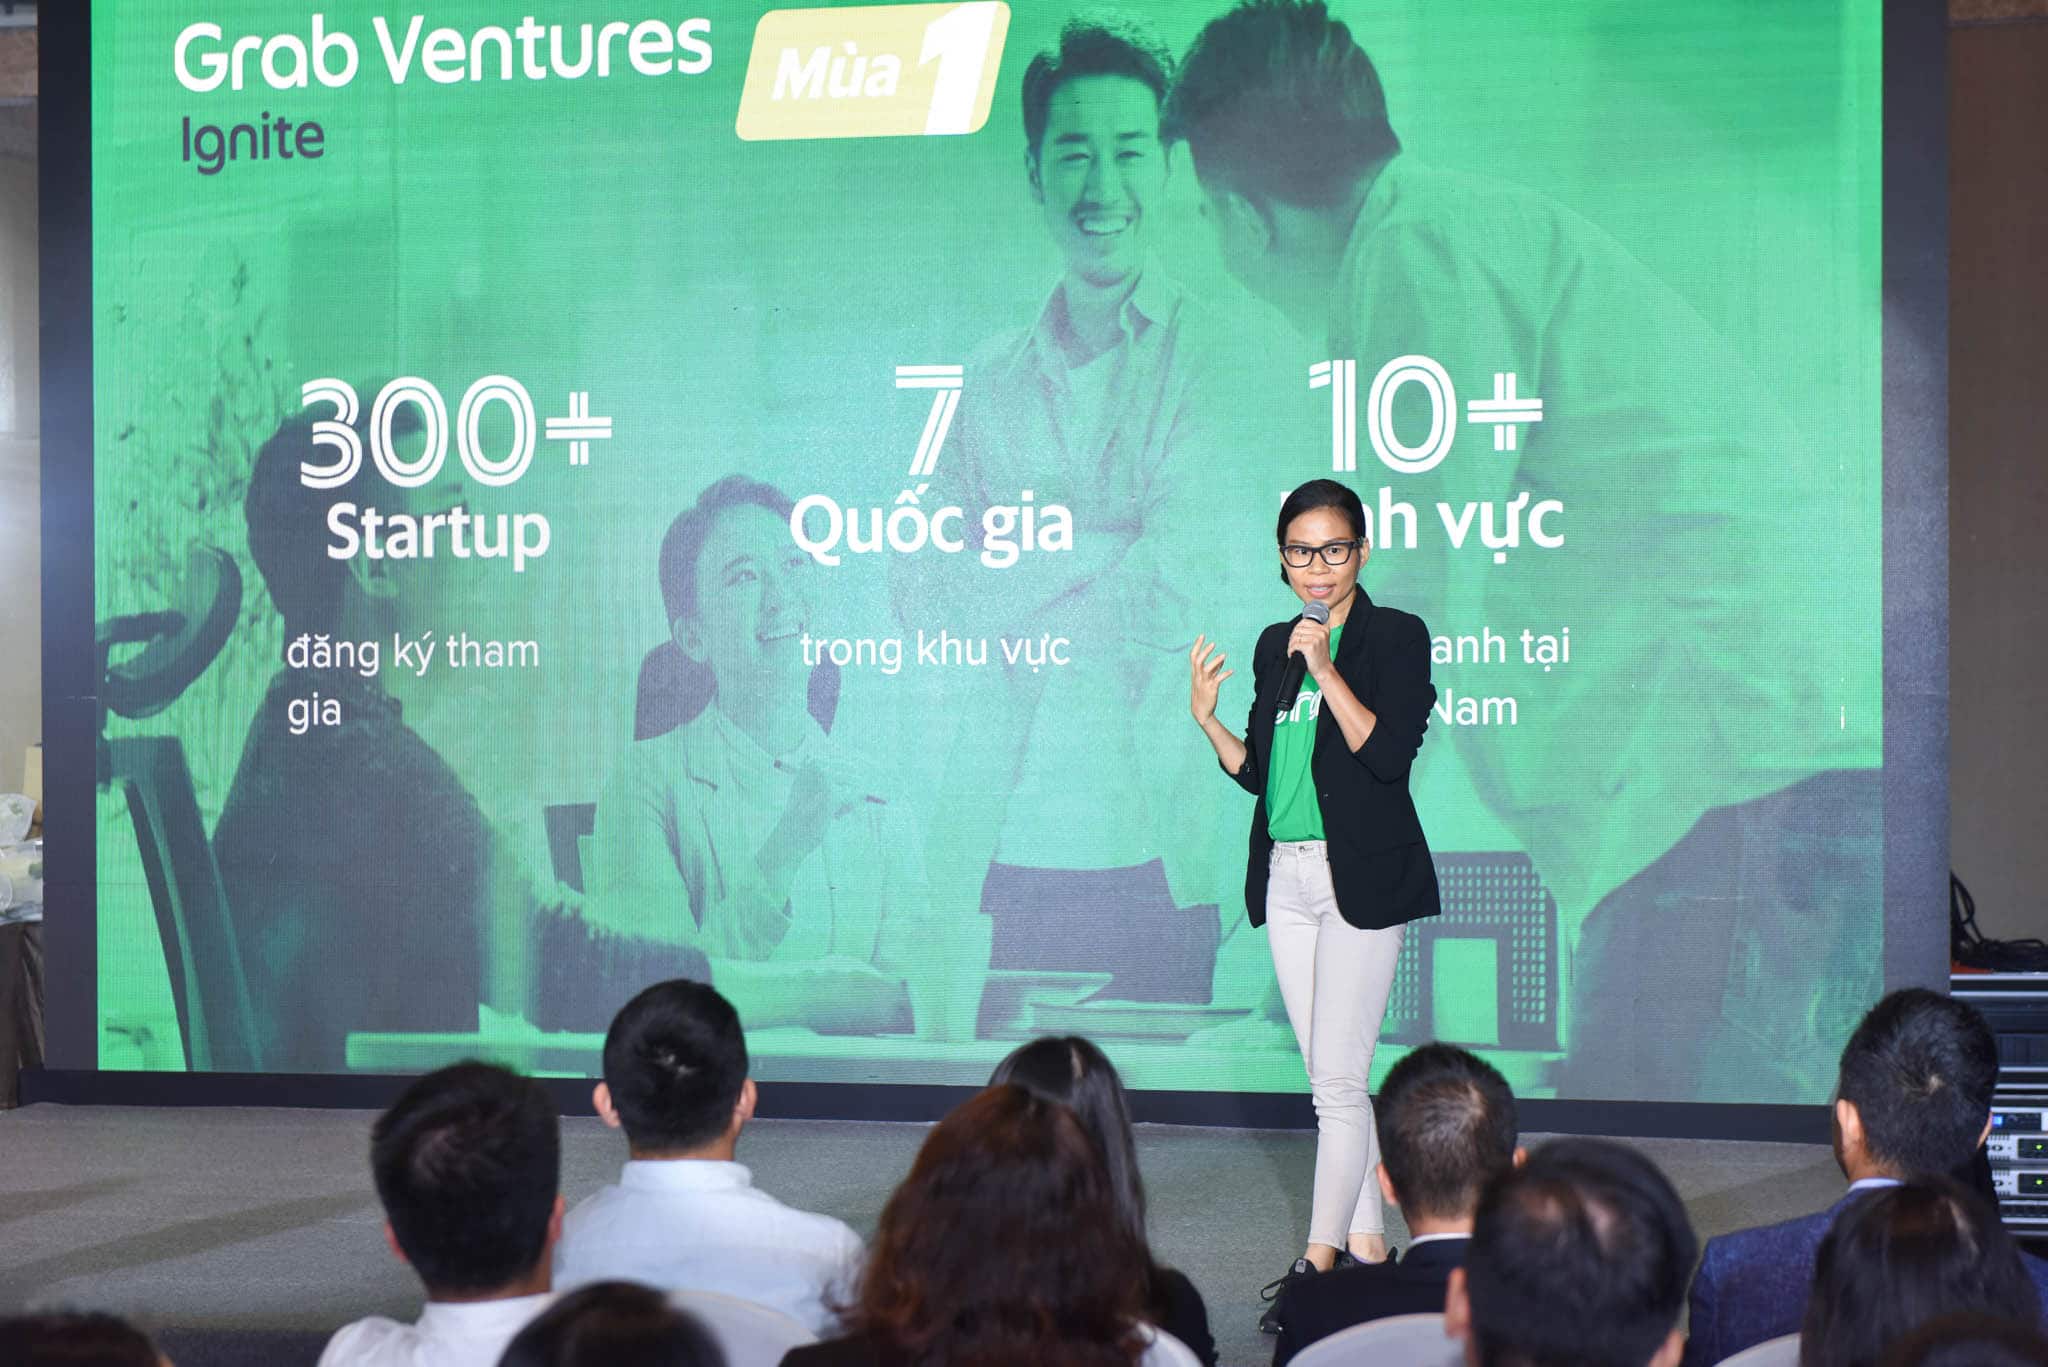 Grab công bố những startup xuất sắc nhất của chương trình Grab Ventures Ignite mùa 1